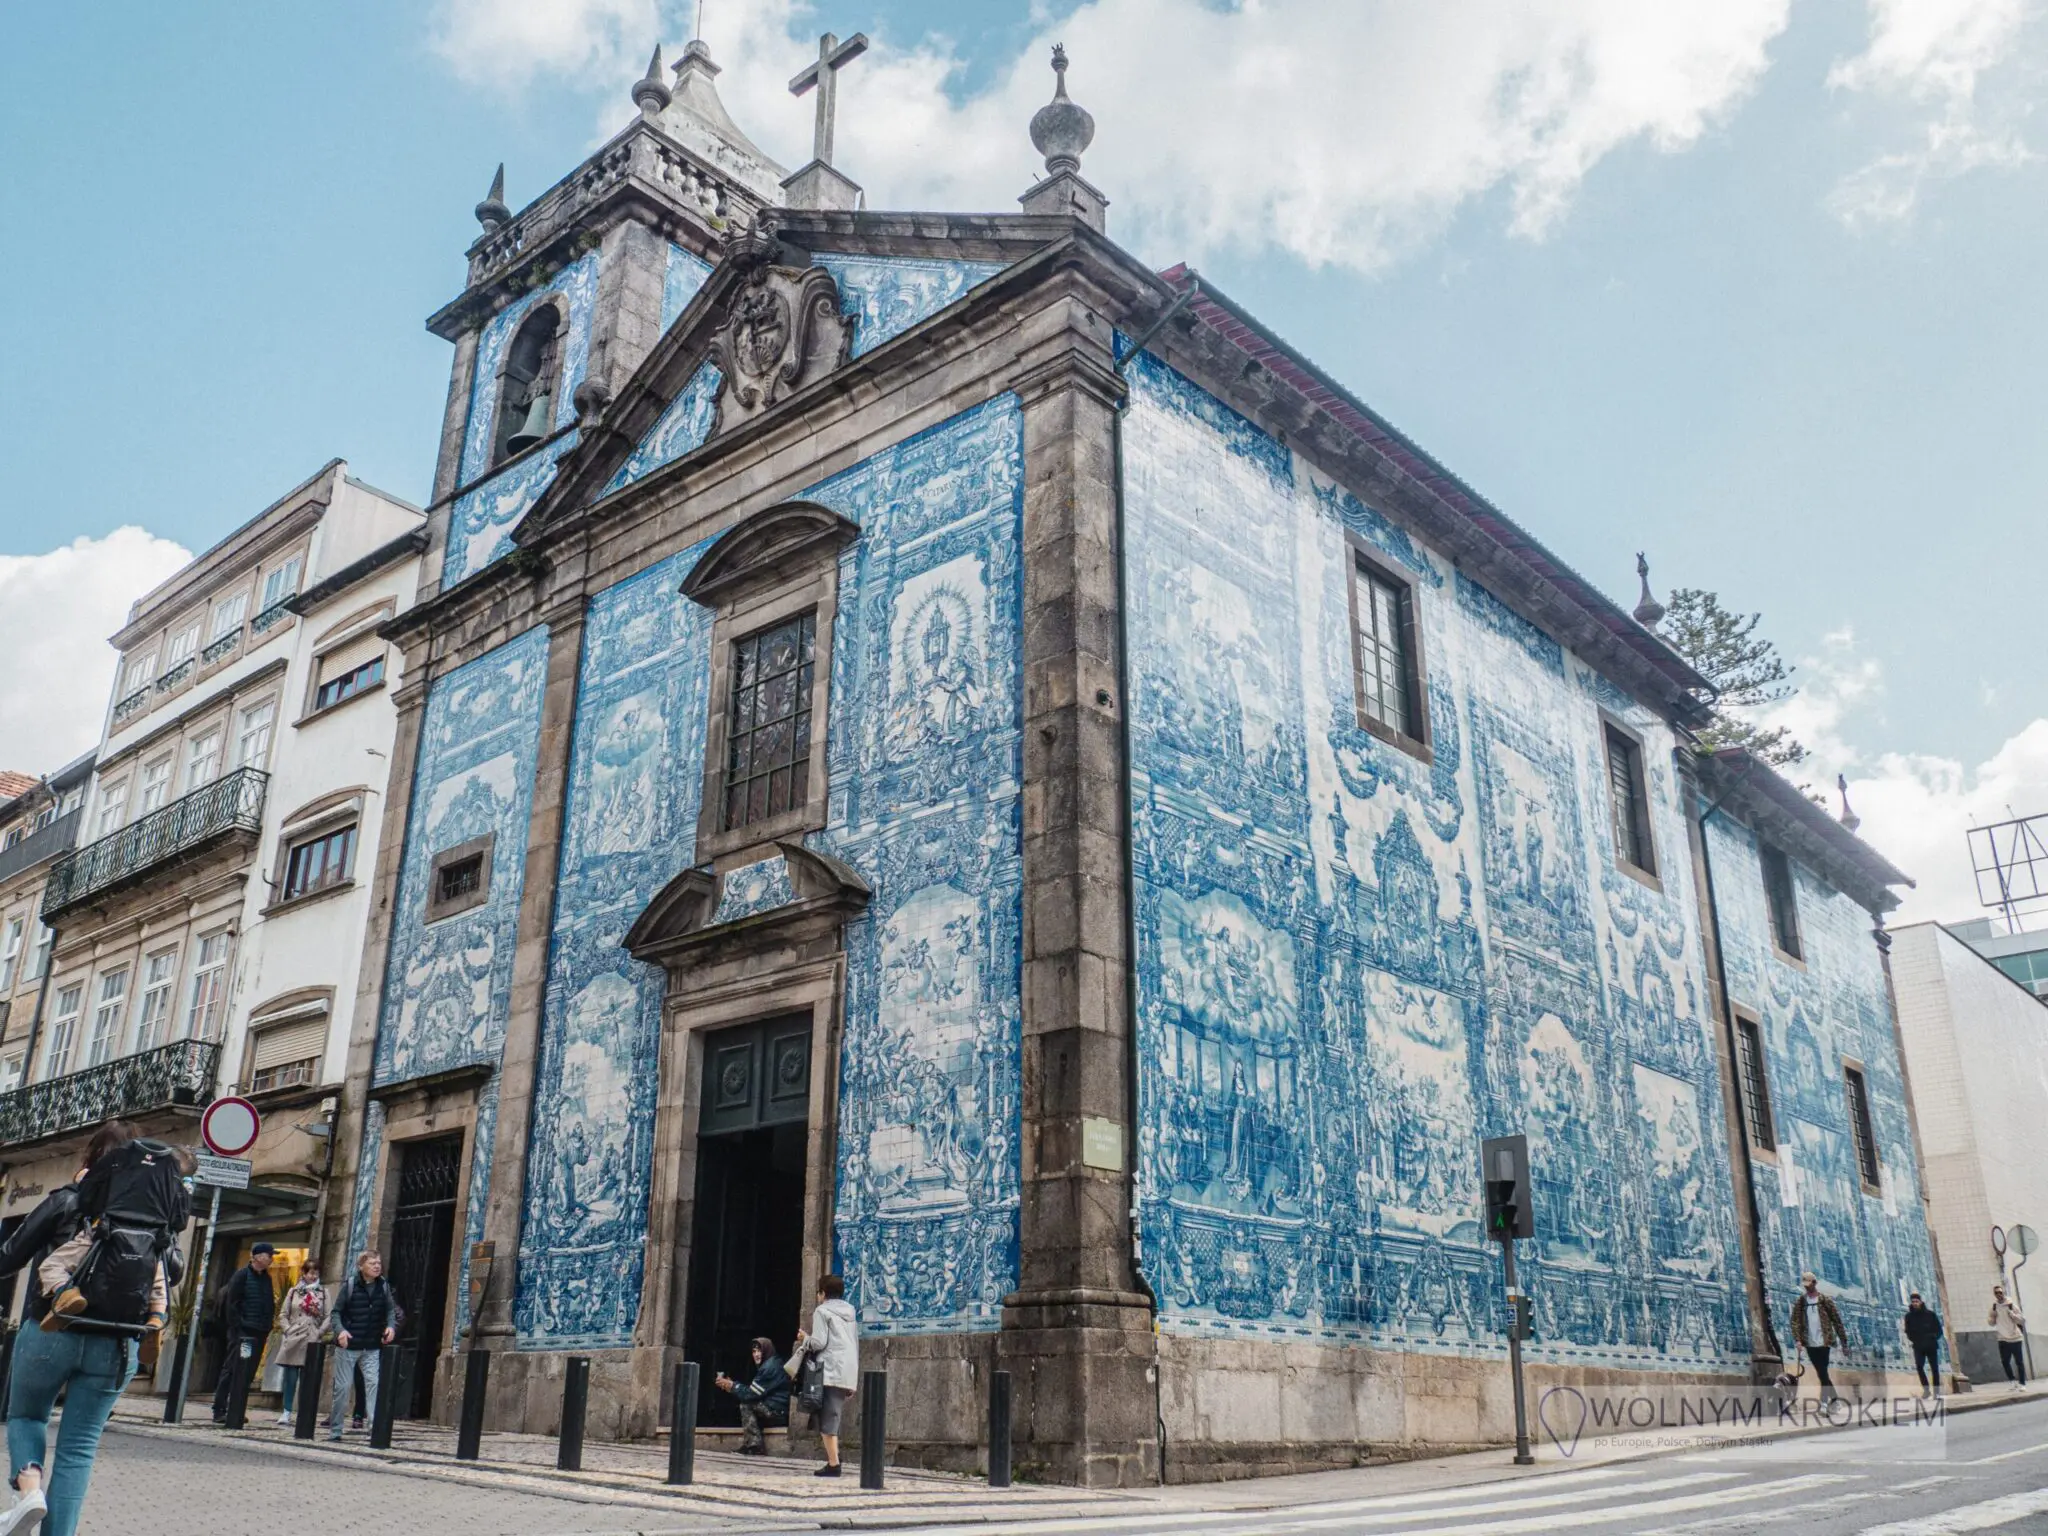 3 dni w Porto plan zwiedzania miasta [porady, atrakcje, rodzinne zwiedzanie]